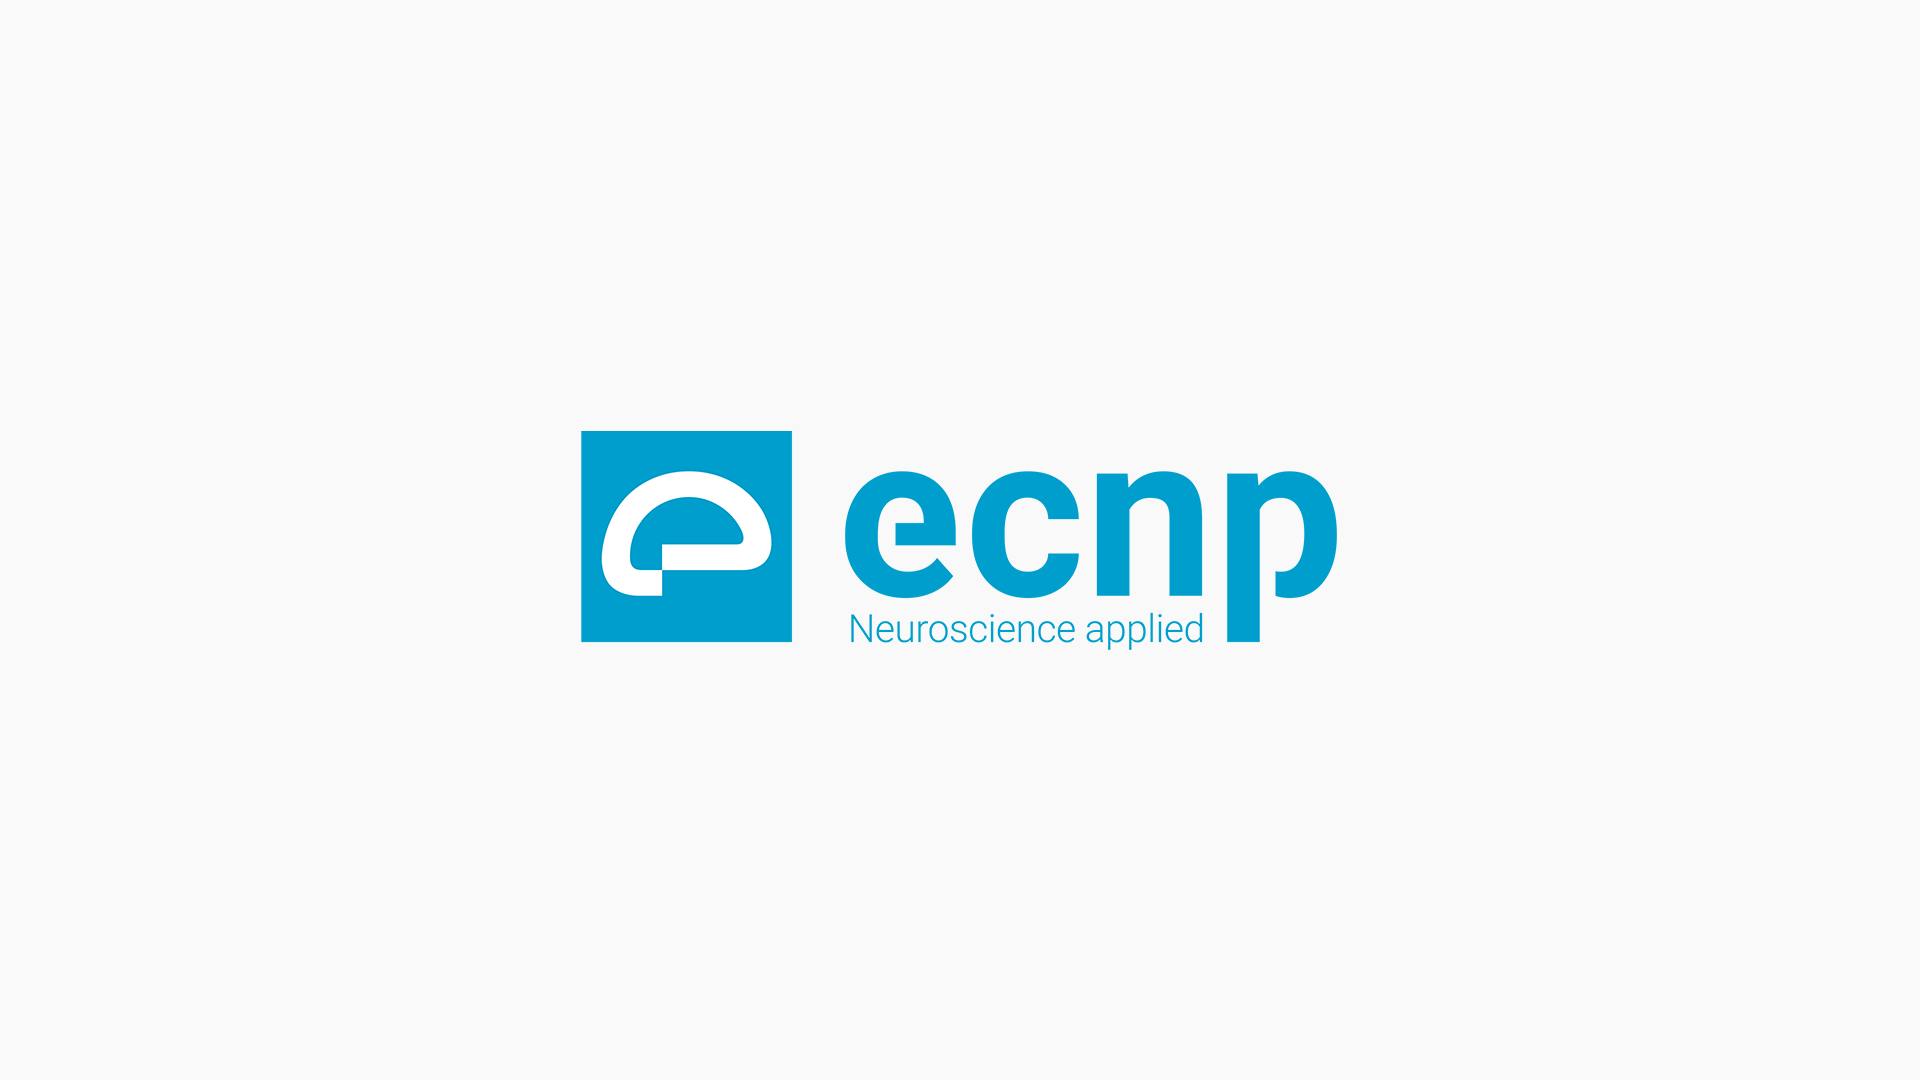 Logo dell'ECNP: quadrato azzurro contenente un cervello bianco stilizzato e scritta a lato "ecnp Neuroscience applied".